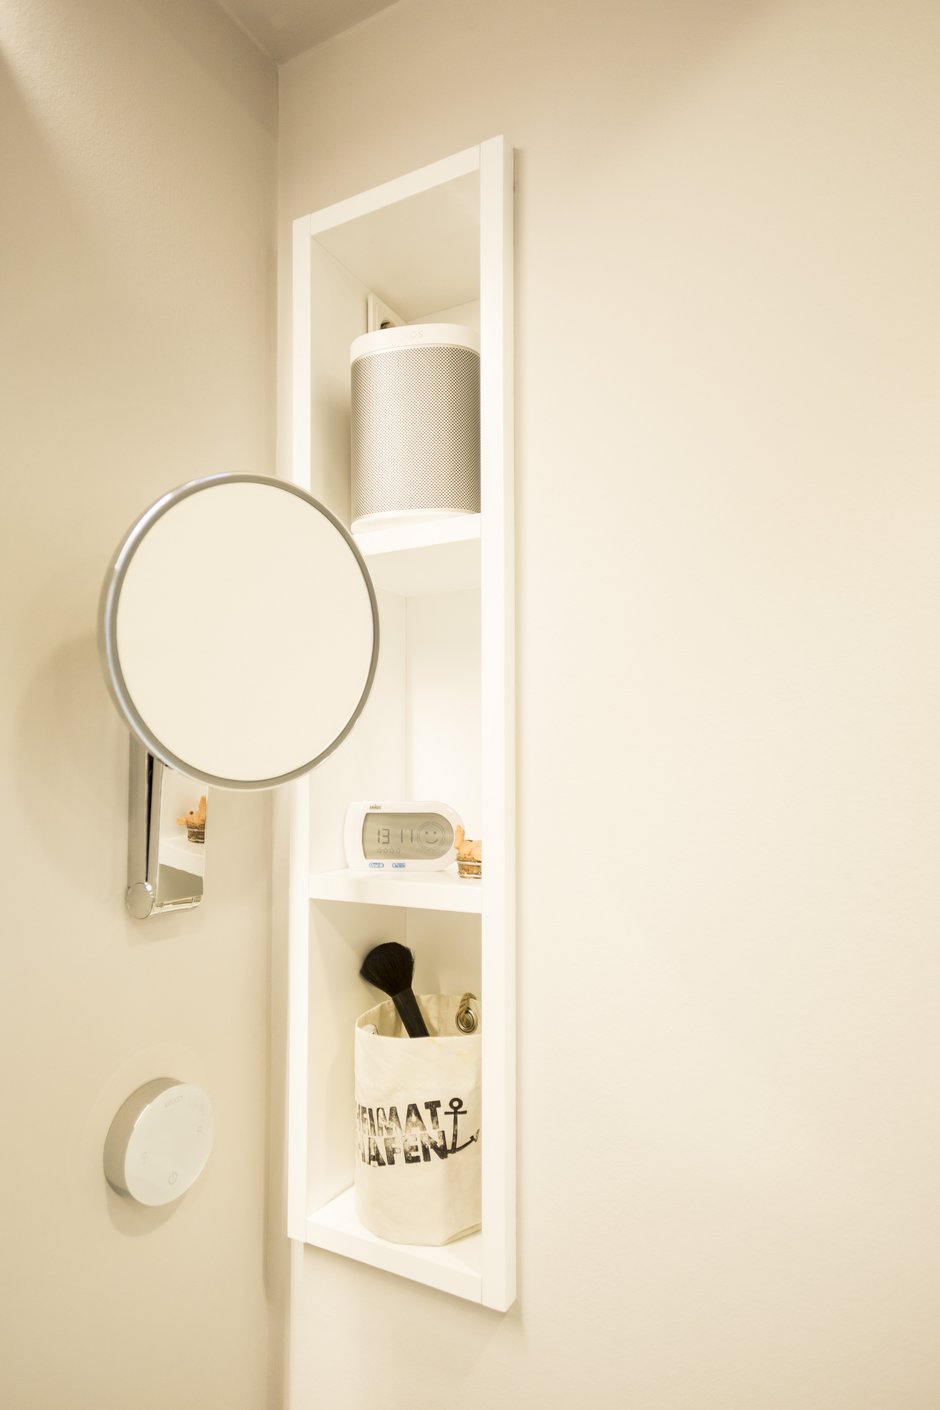 Modernisierung Einfamilienhaus Bad Regal Spiegel